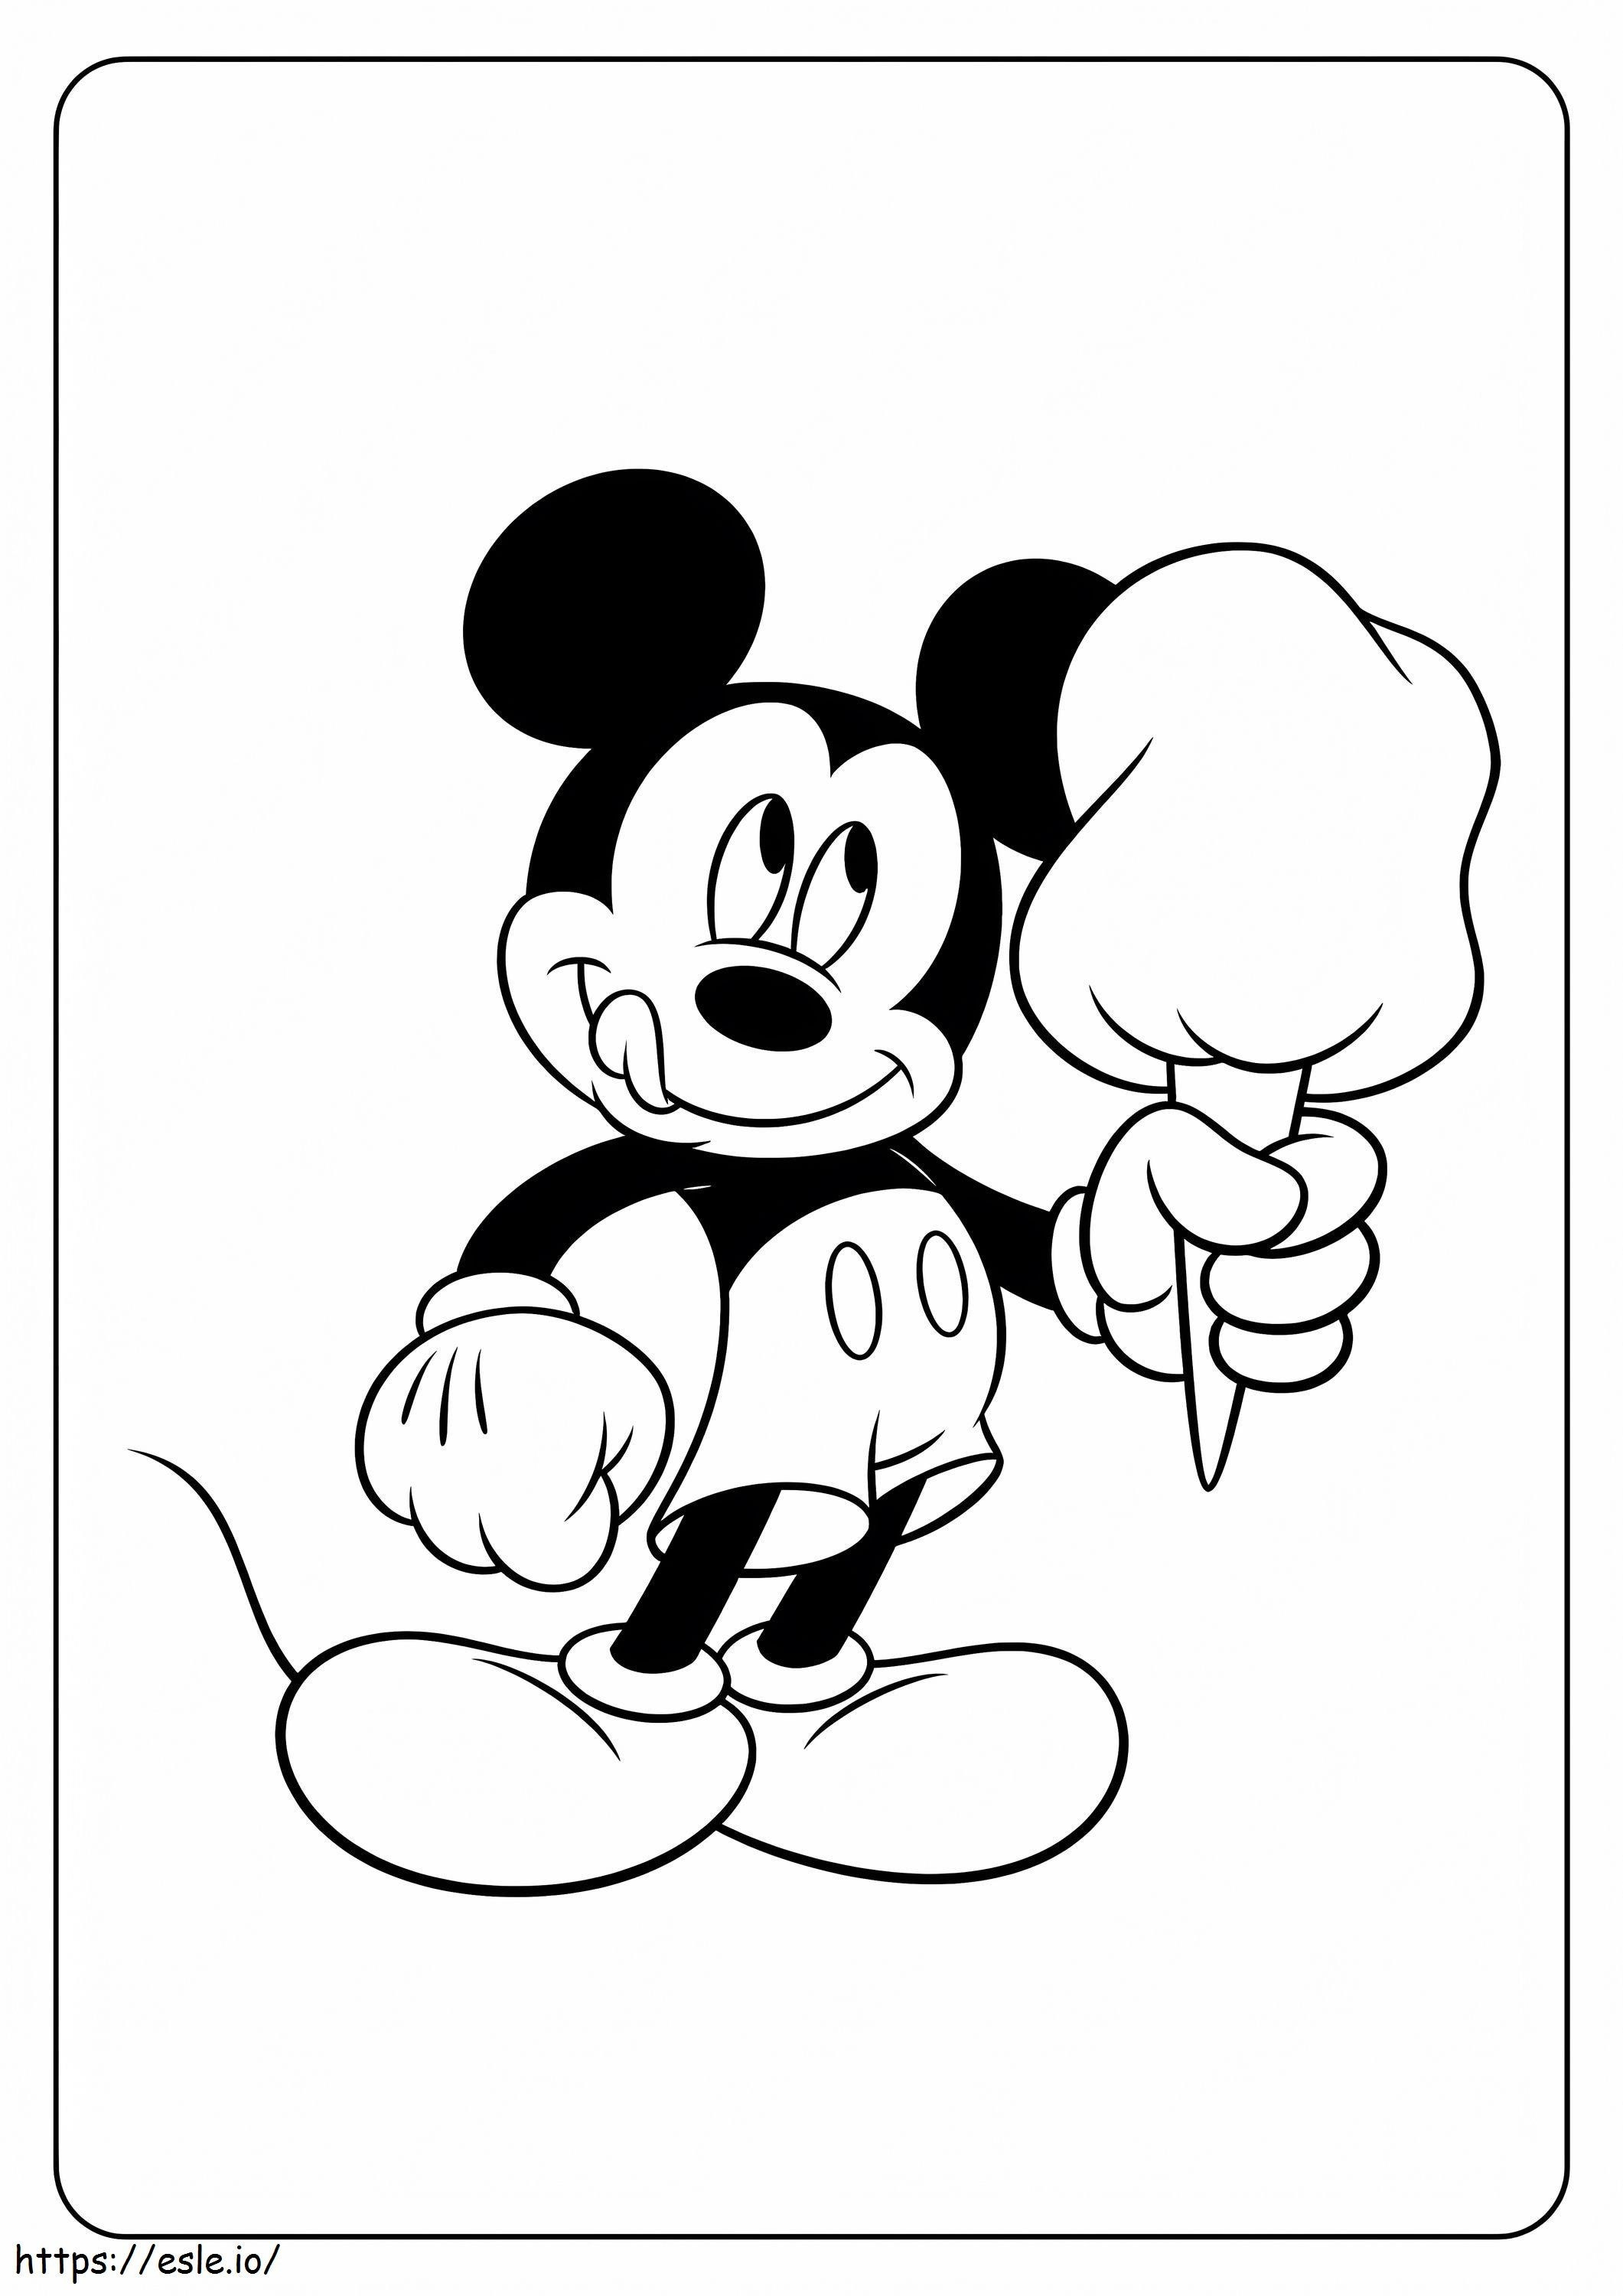 Mickey Mouse segurando doces para colorir